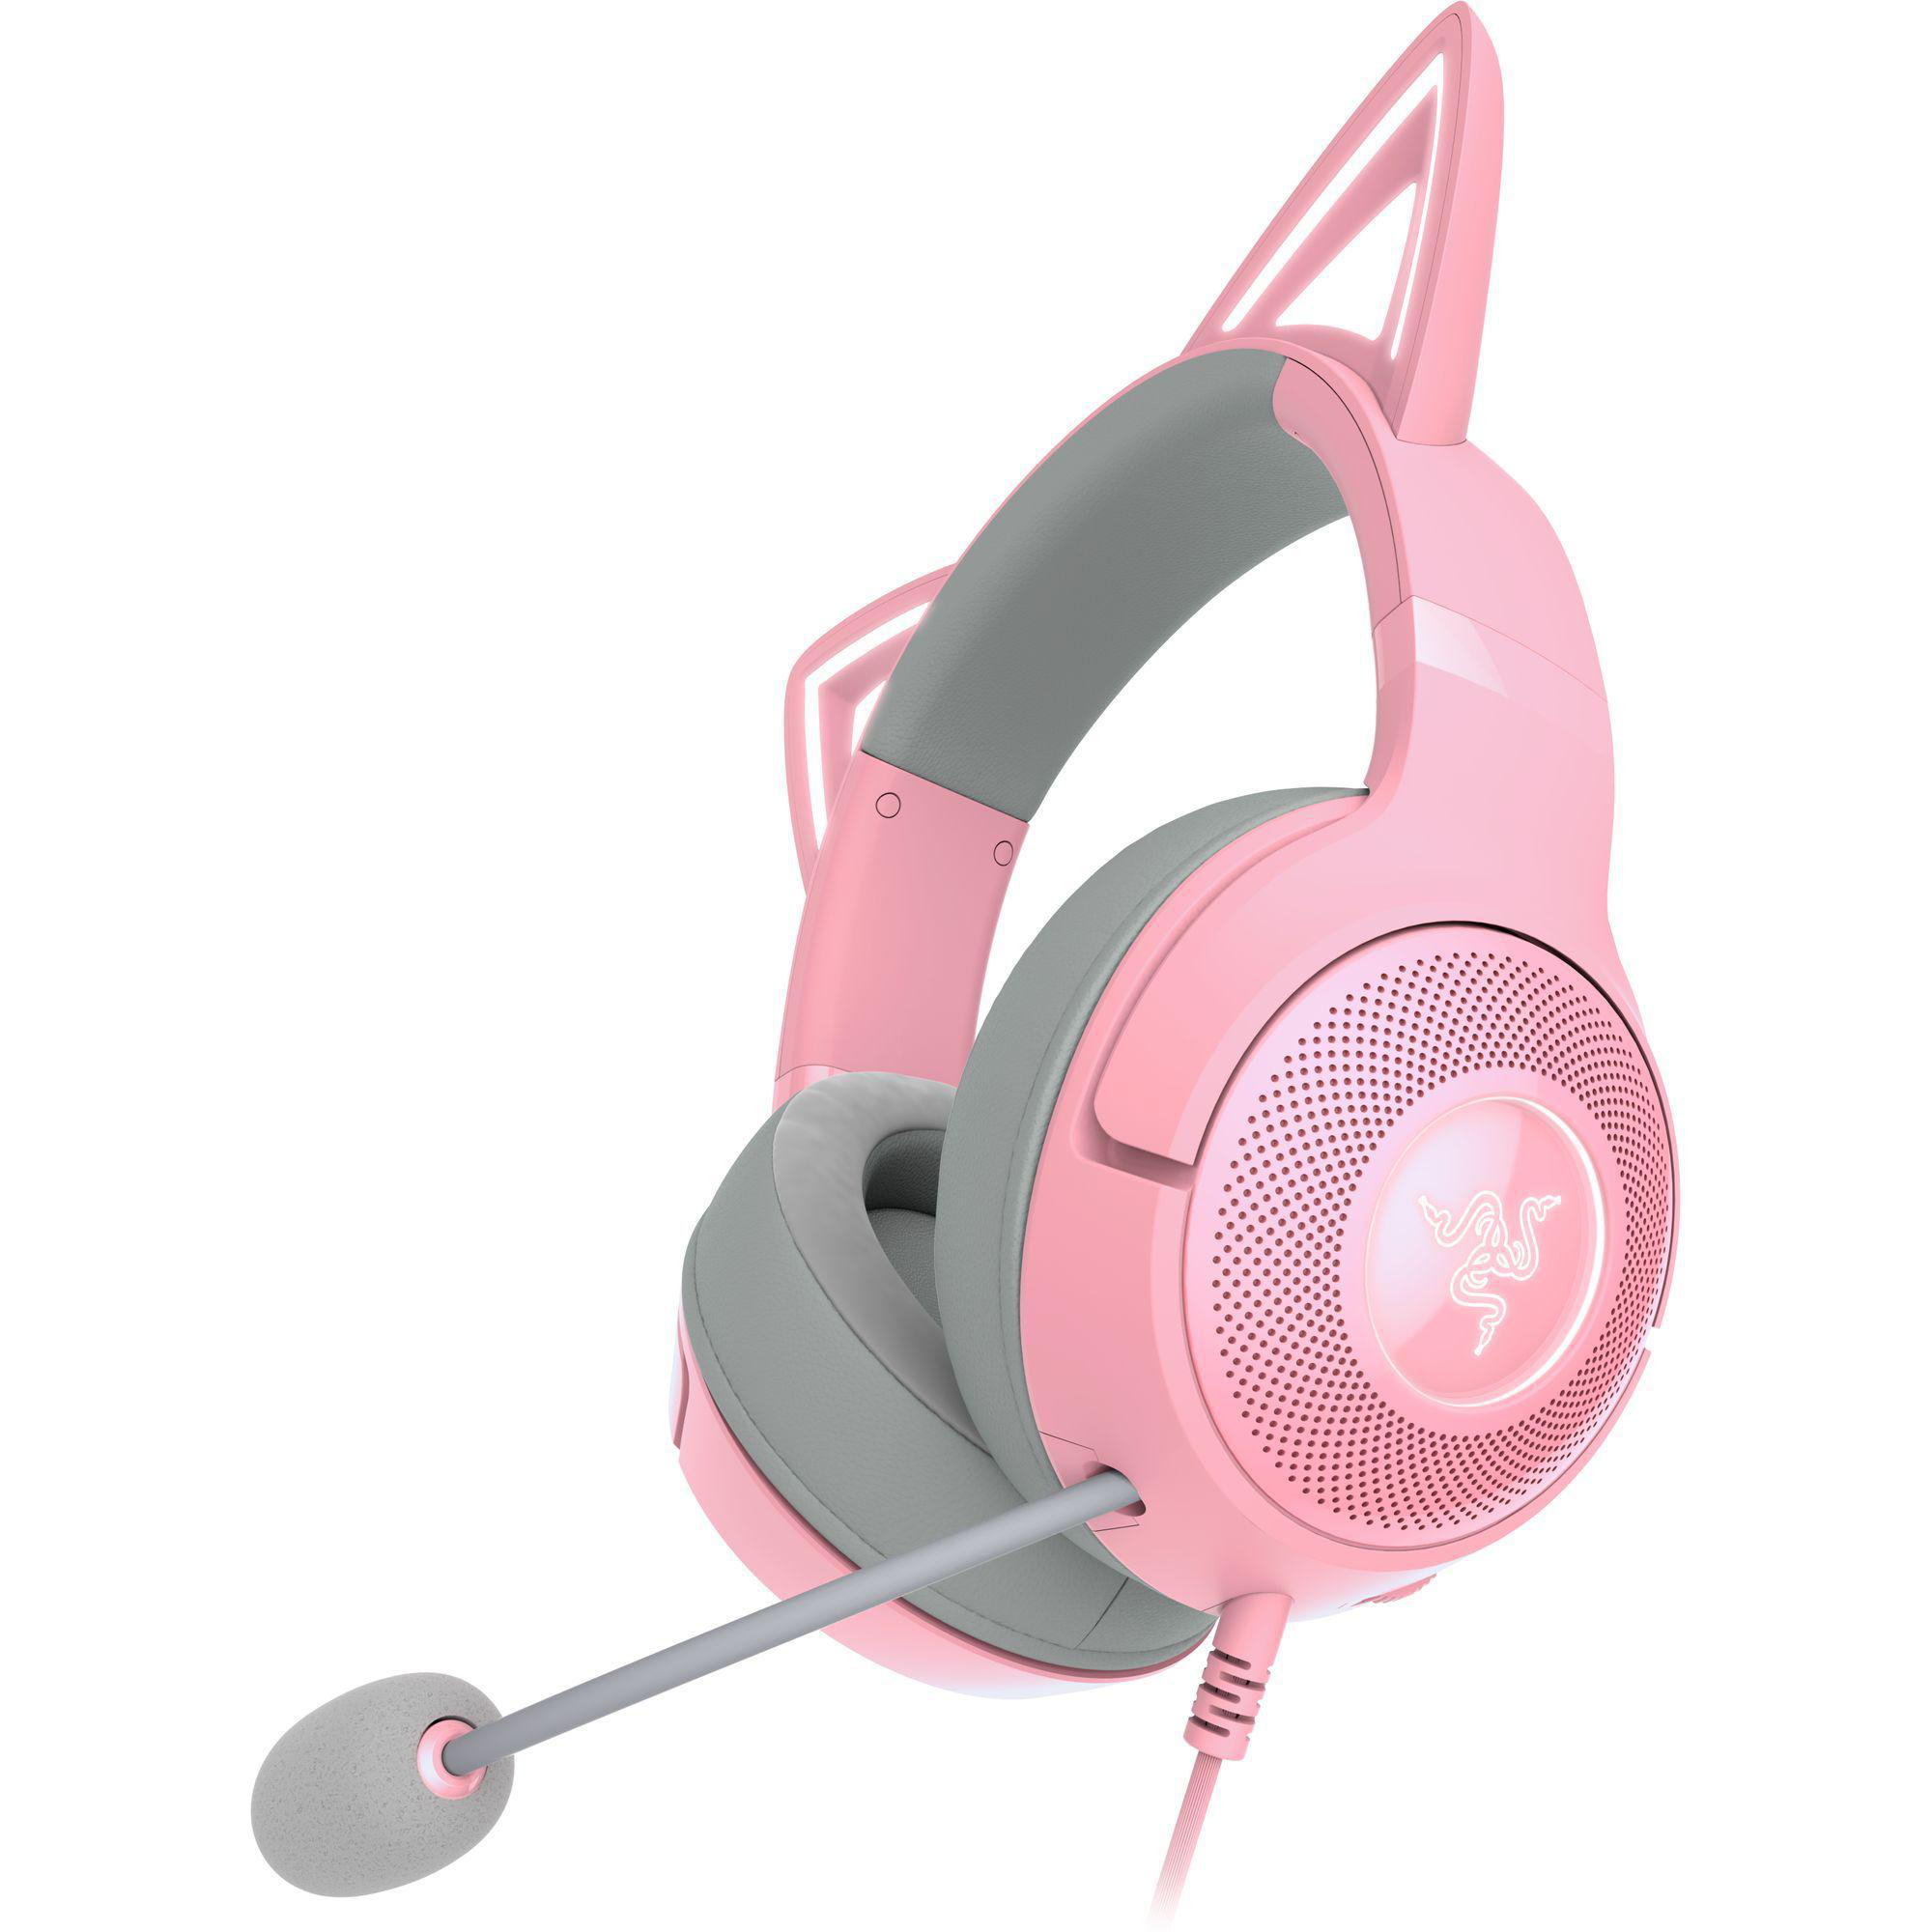 Kraken Quartz RAZER Gaming Kitty Over-ear Headset V2,